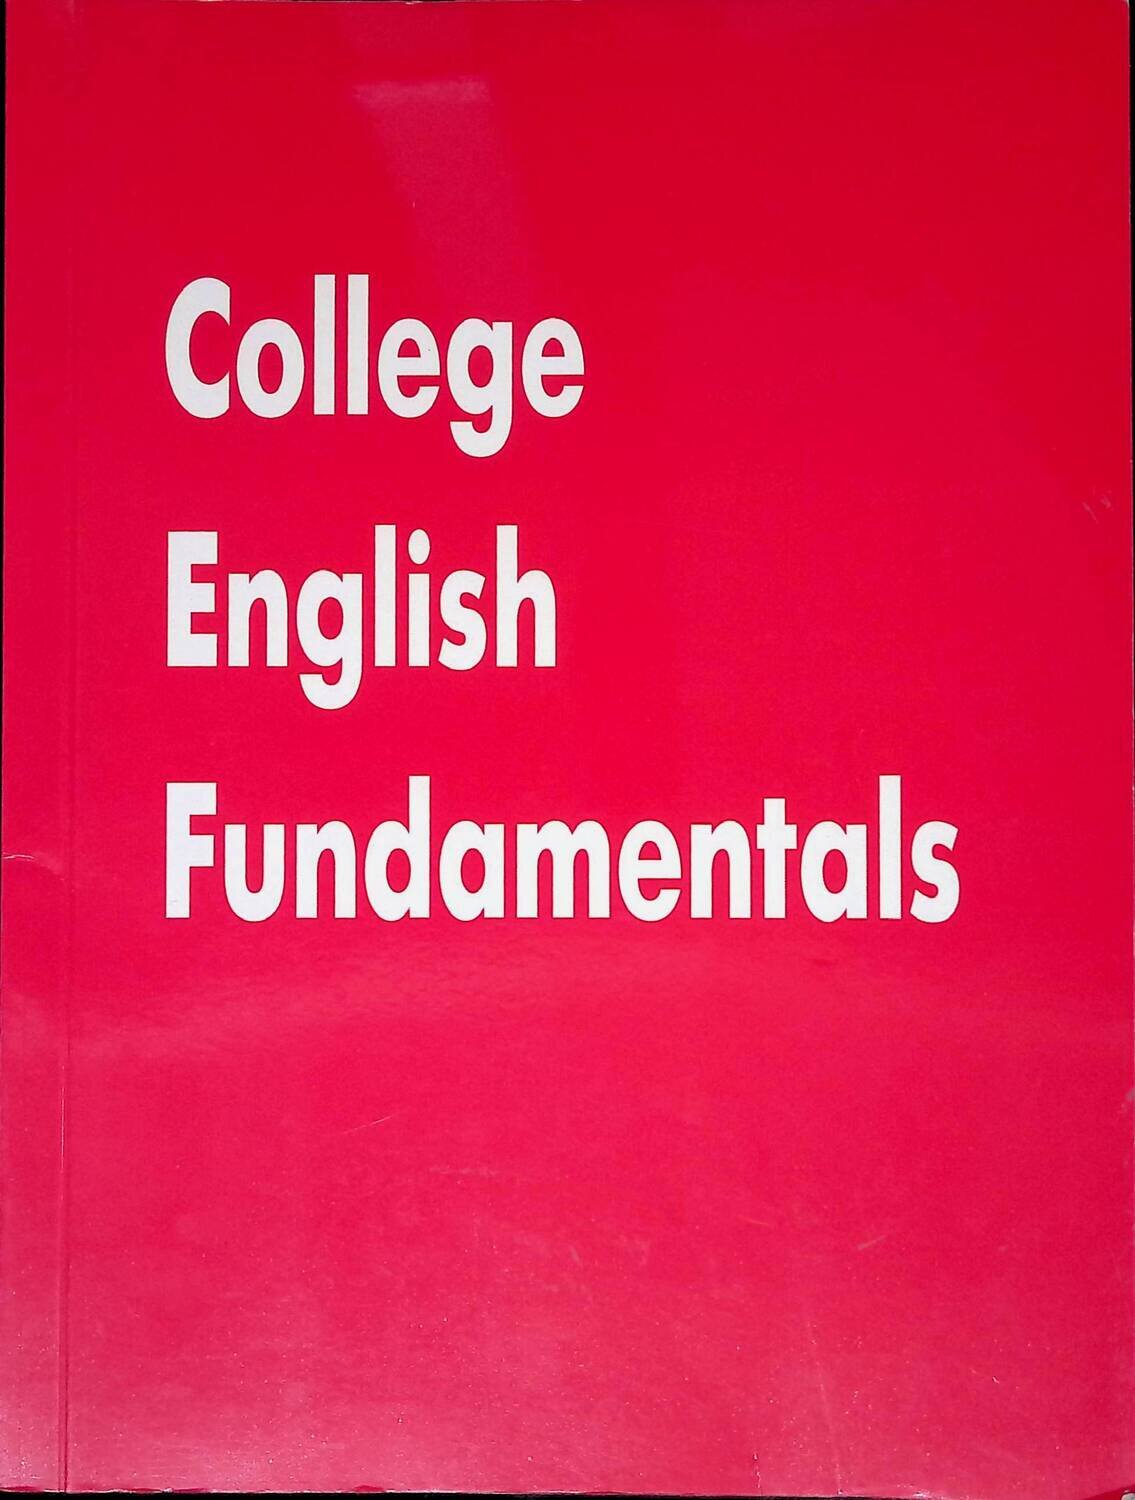 College English Fundamentals / Основы английского языка для колледжей; Автор не указан